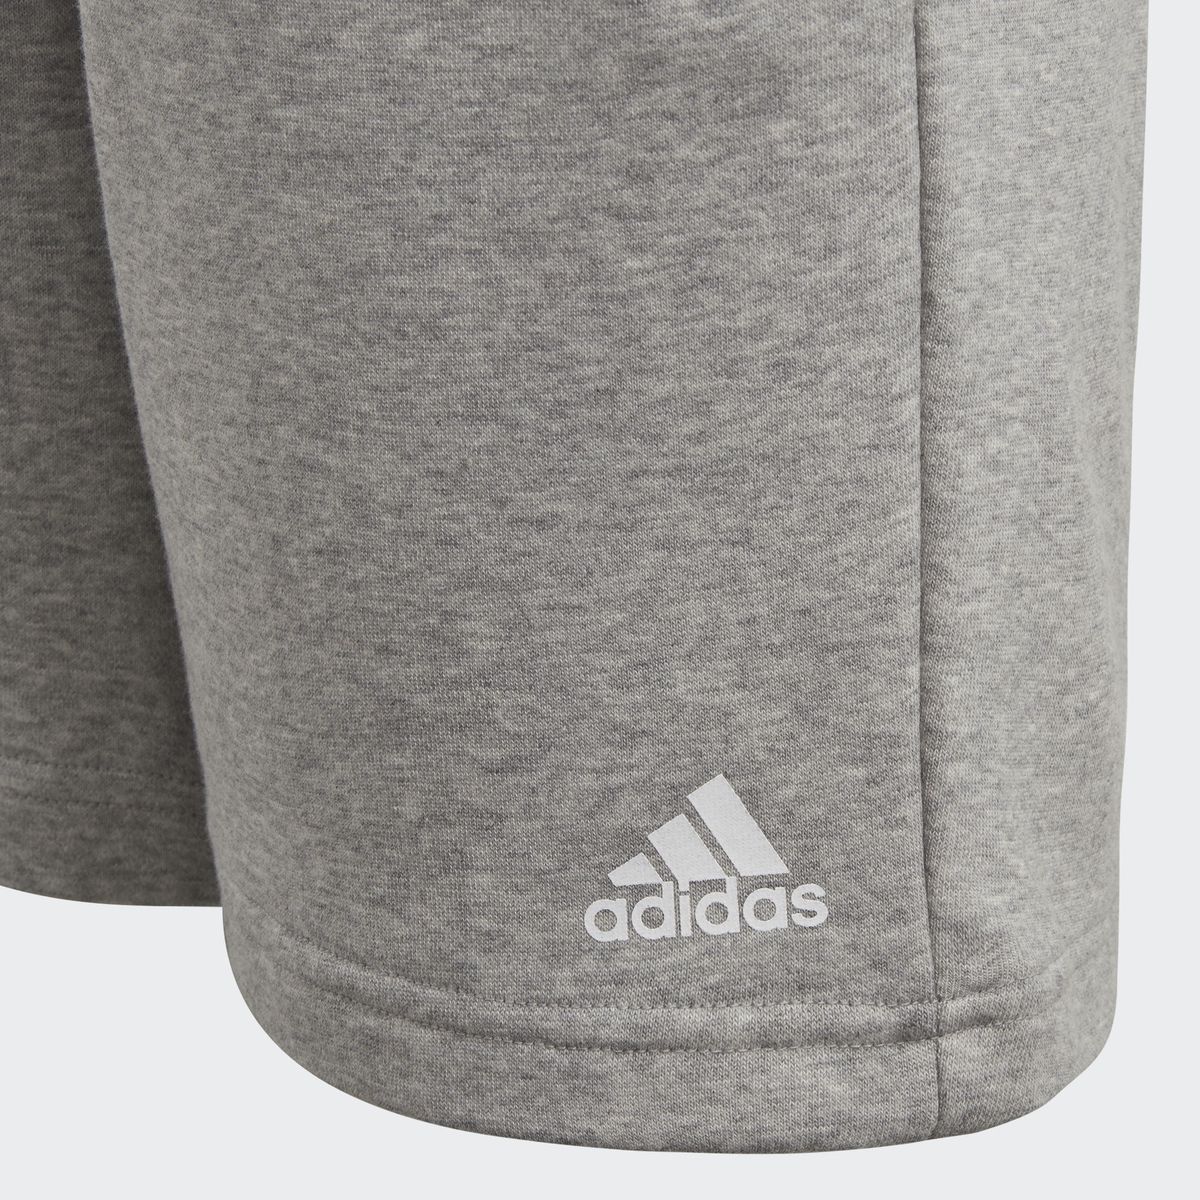    Adidas Yb Logo Short, : . CF6534.  146